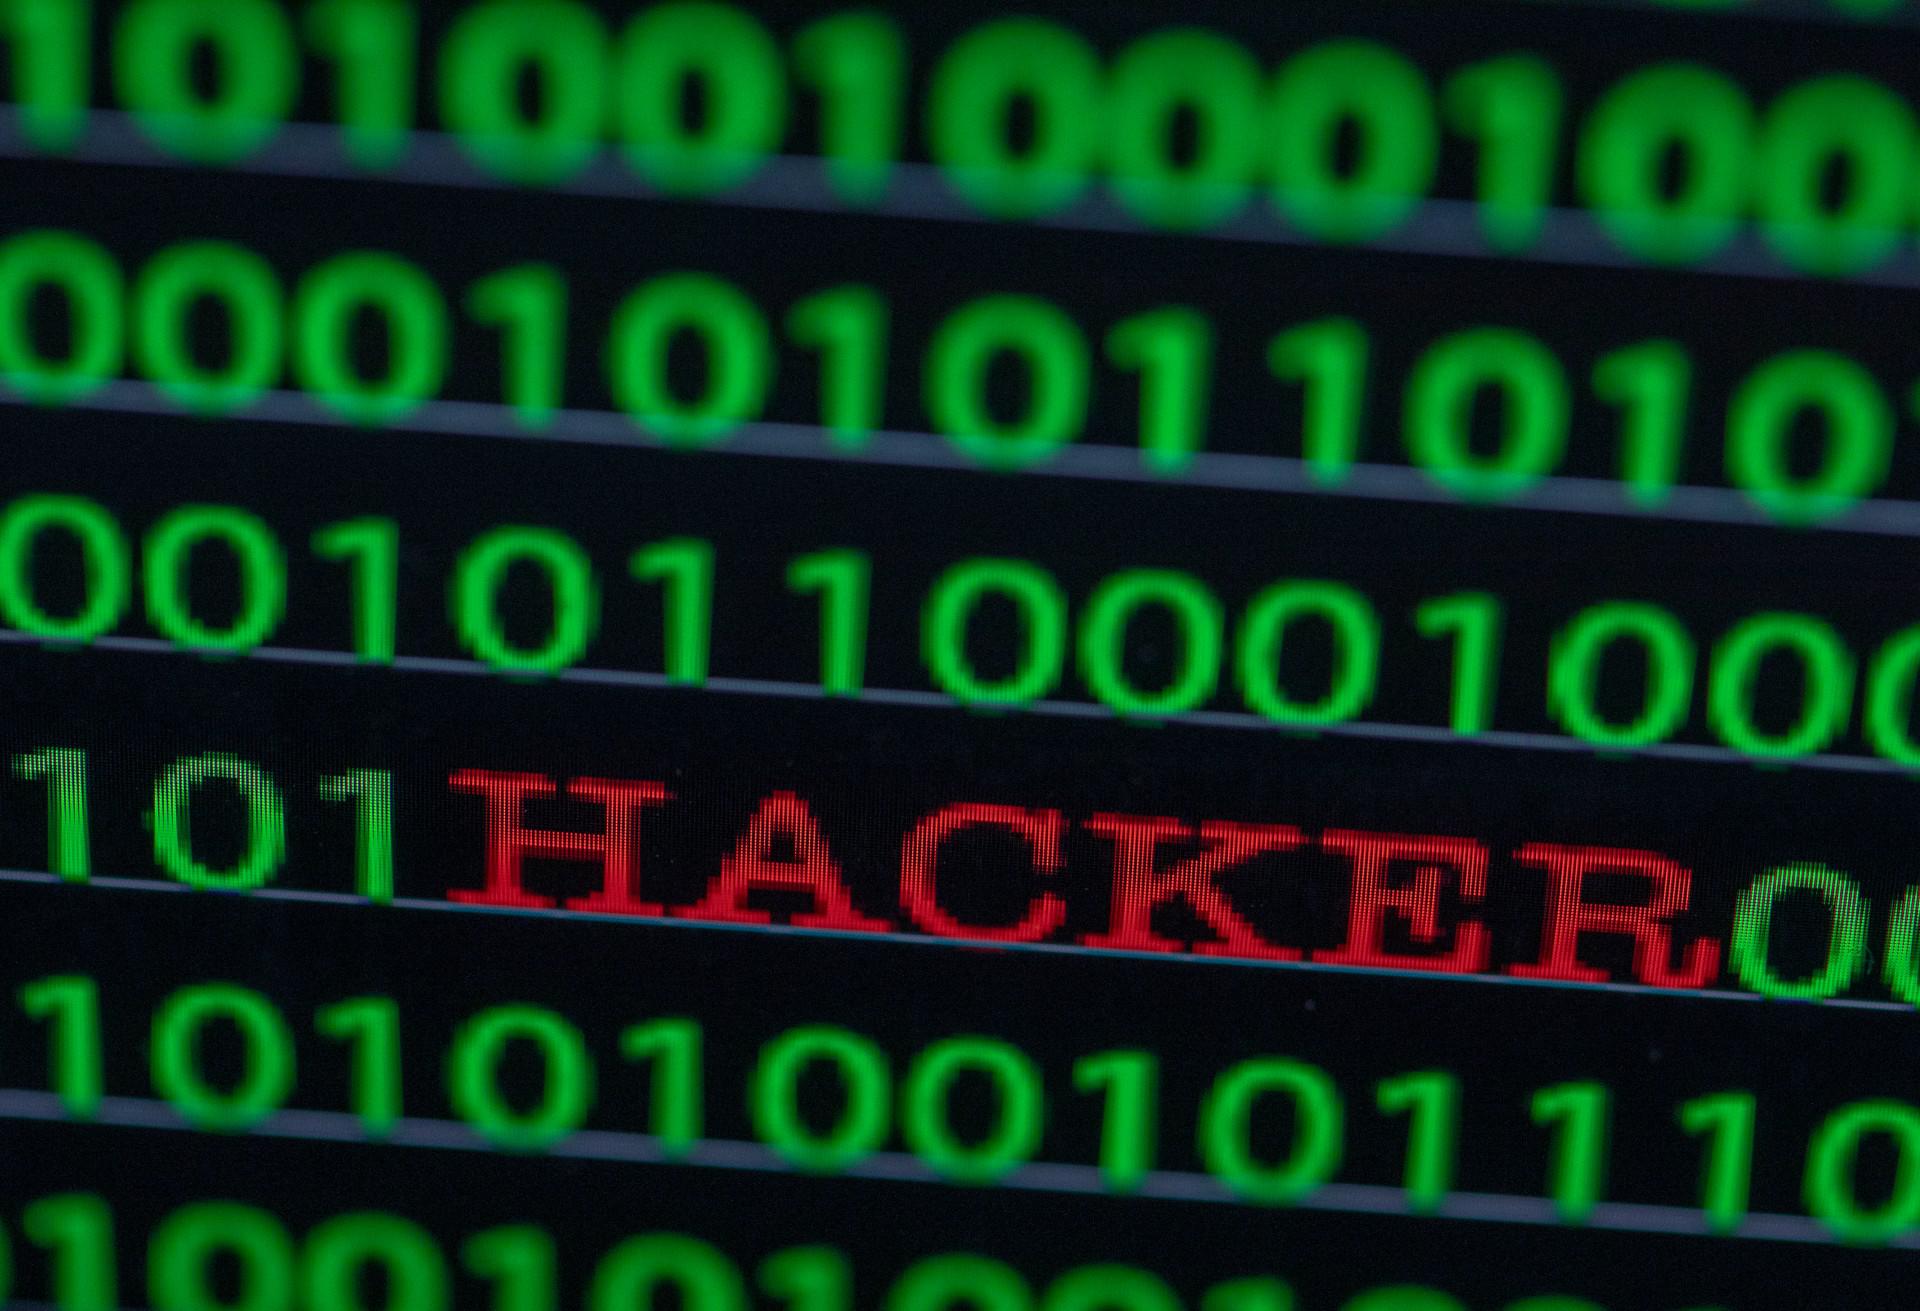 Europee - attacco hacker a urne aperte contro siti dei partiti in Olanda